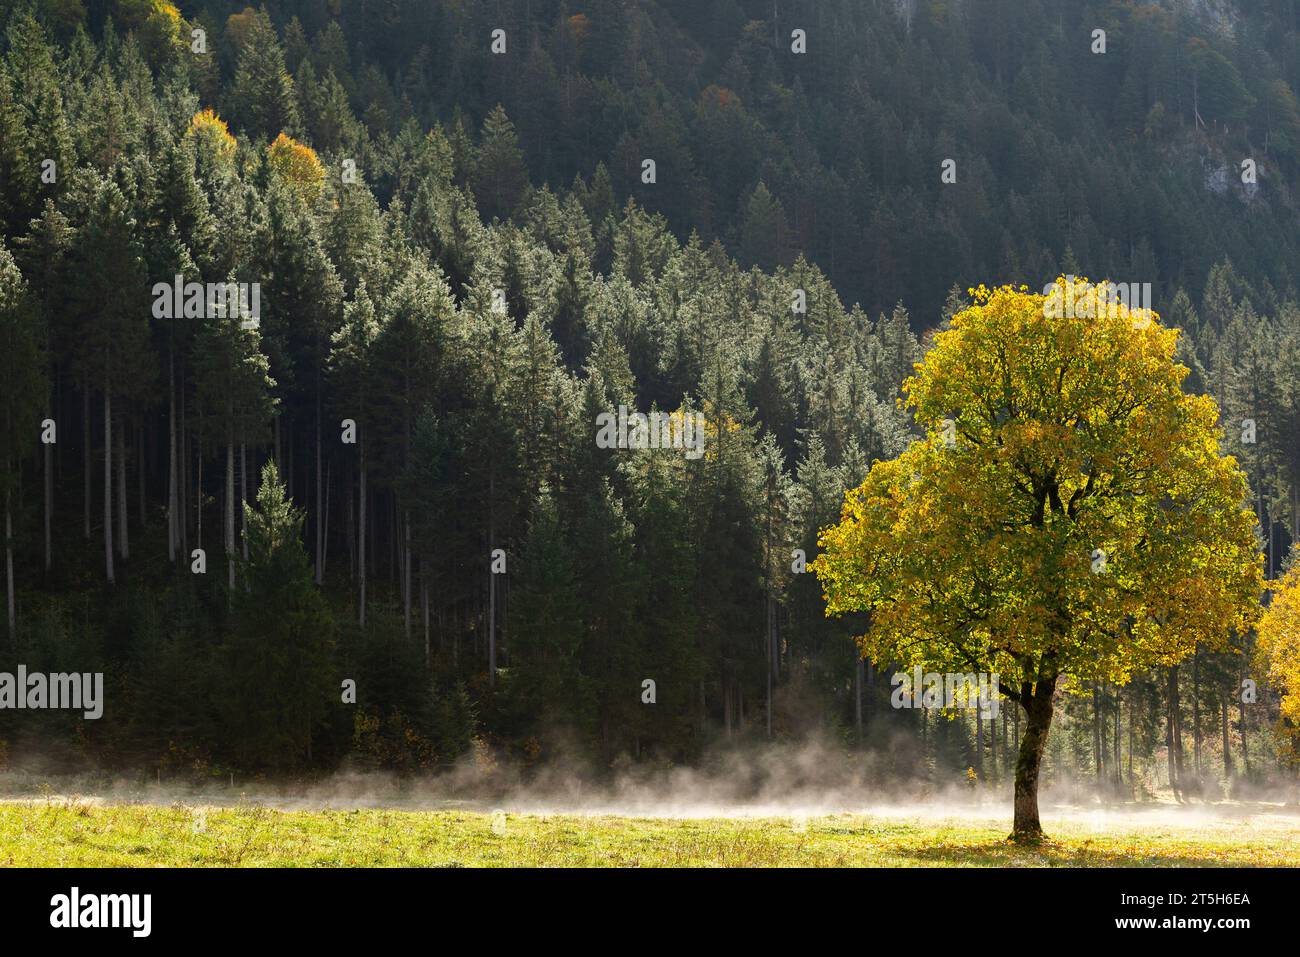 Coloratissimo foilage autunnale nell'Ahorn Boden, Maple Ground, Engtal o Eng Valley, riserva naturale del massiccio del Karwendel, Alpi, Austria, Foto Stock